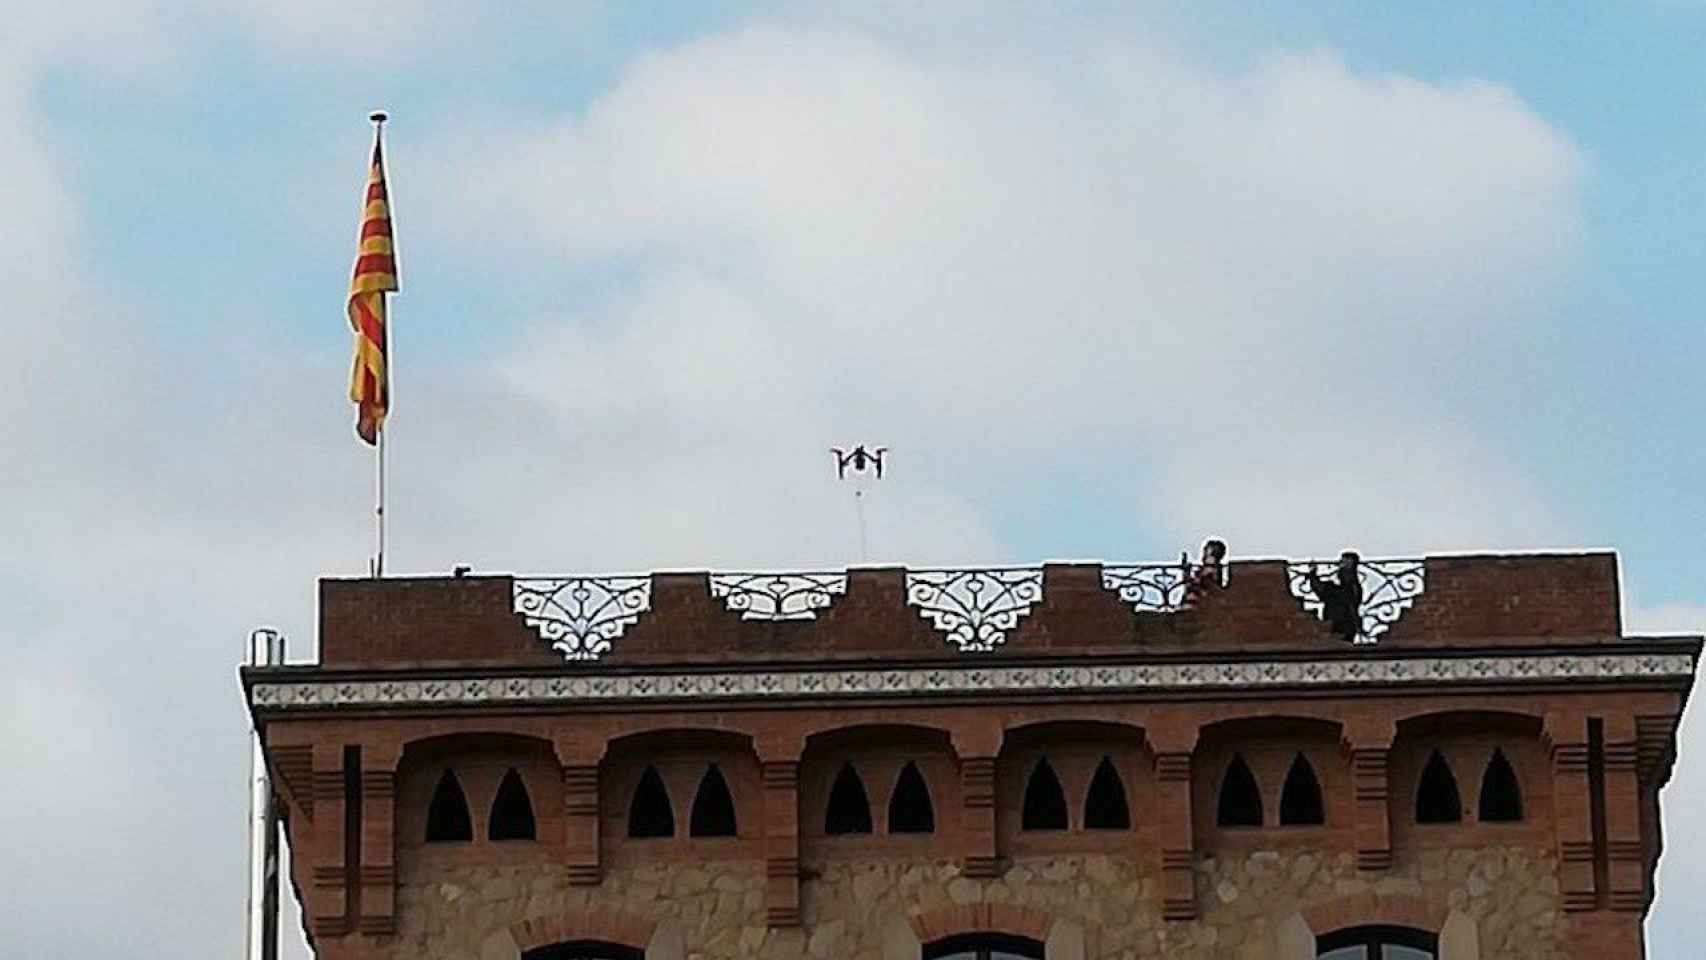 Un dron encima del edificio de la Maternitat